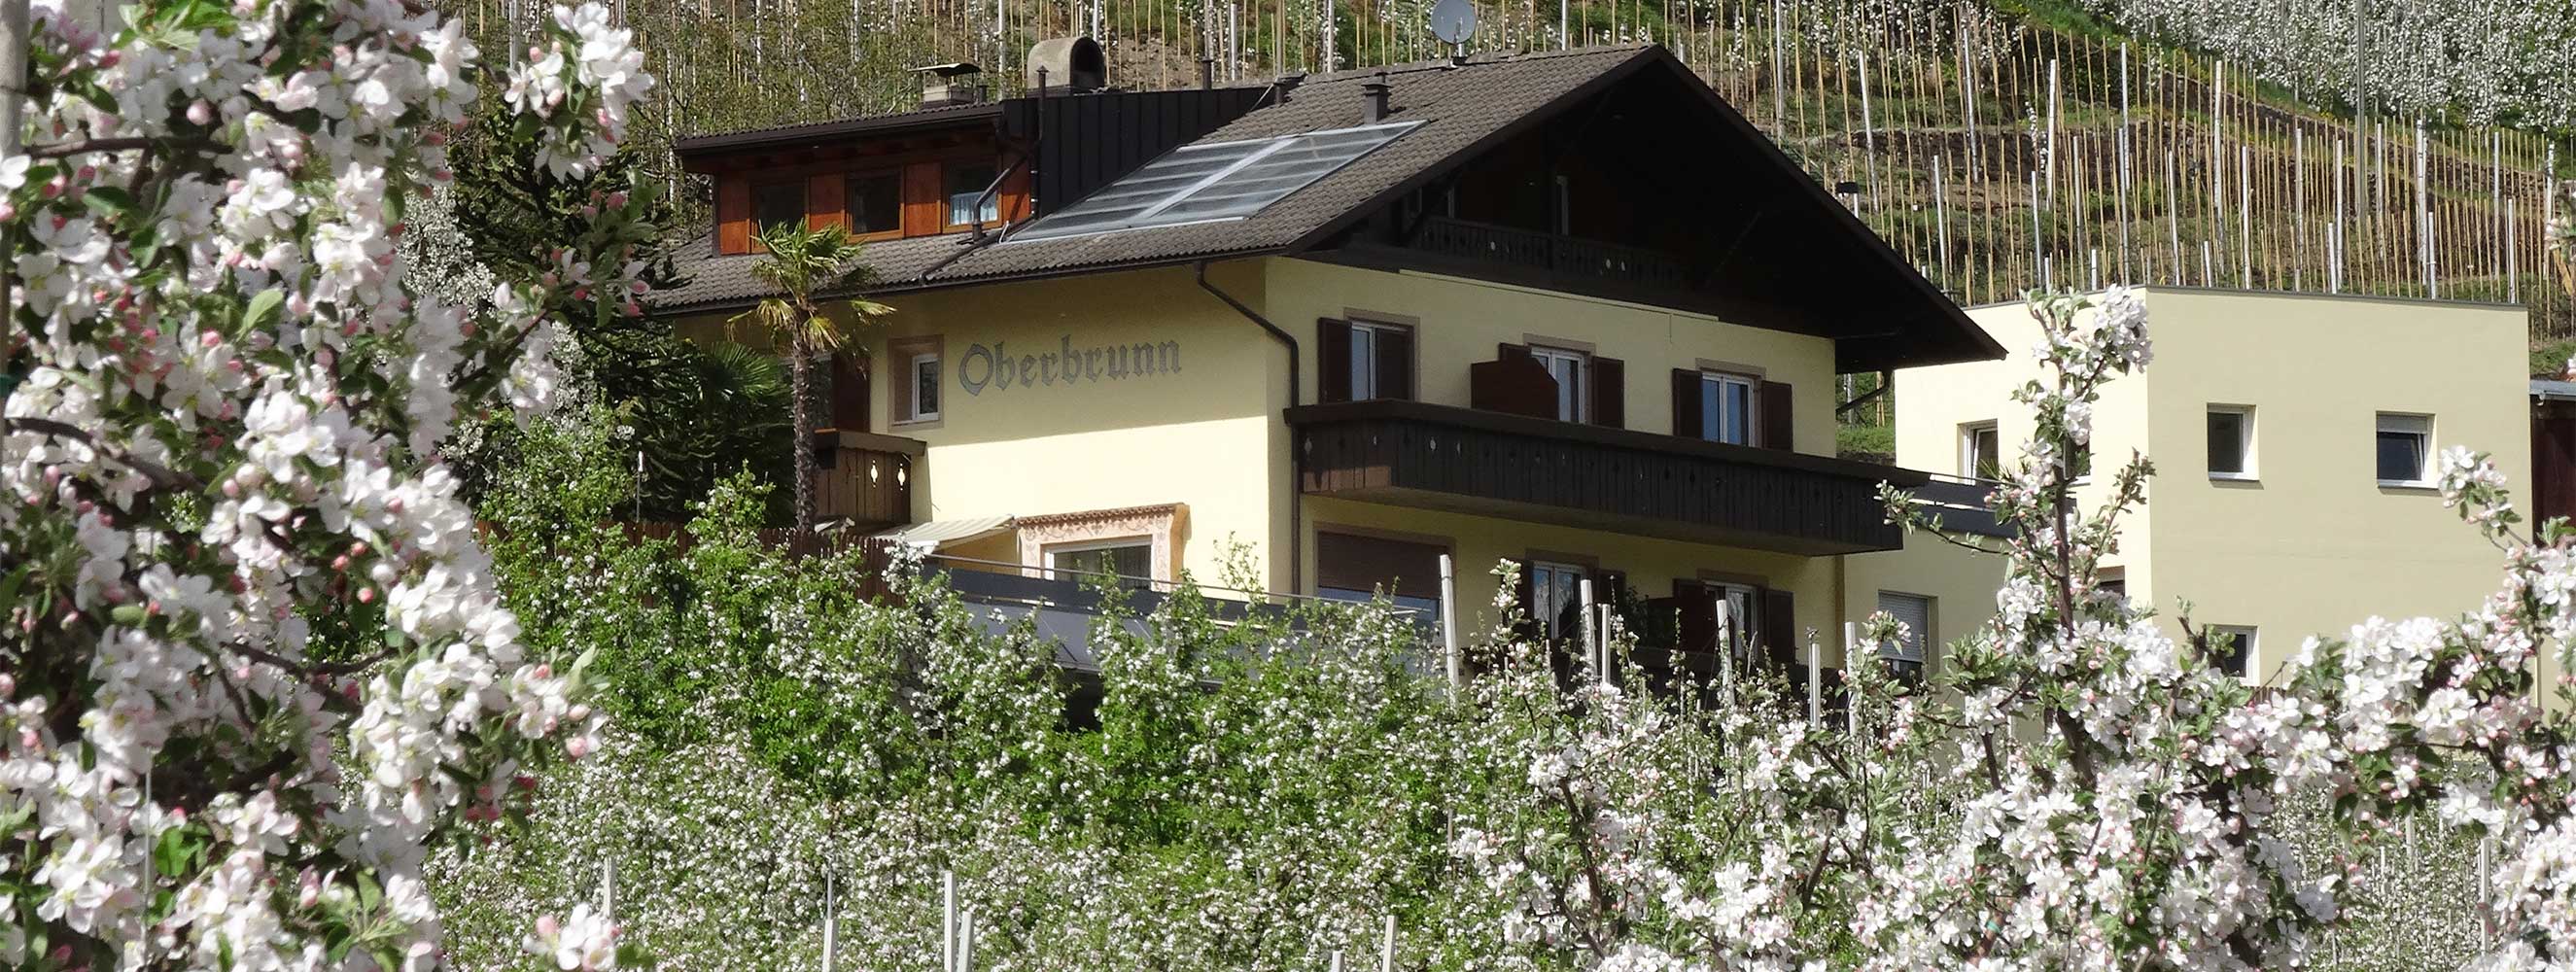 Appartamenti Oberbrunnhof